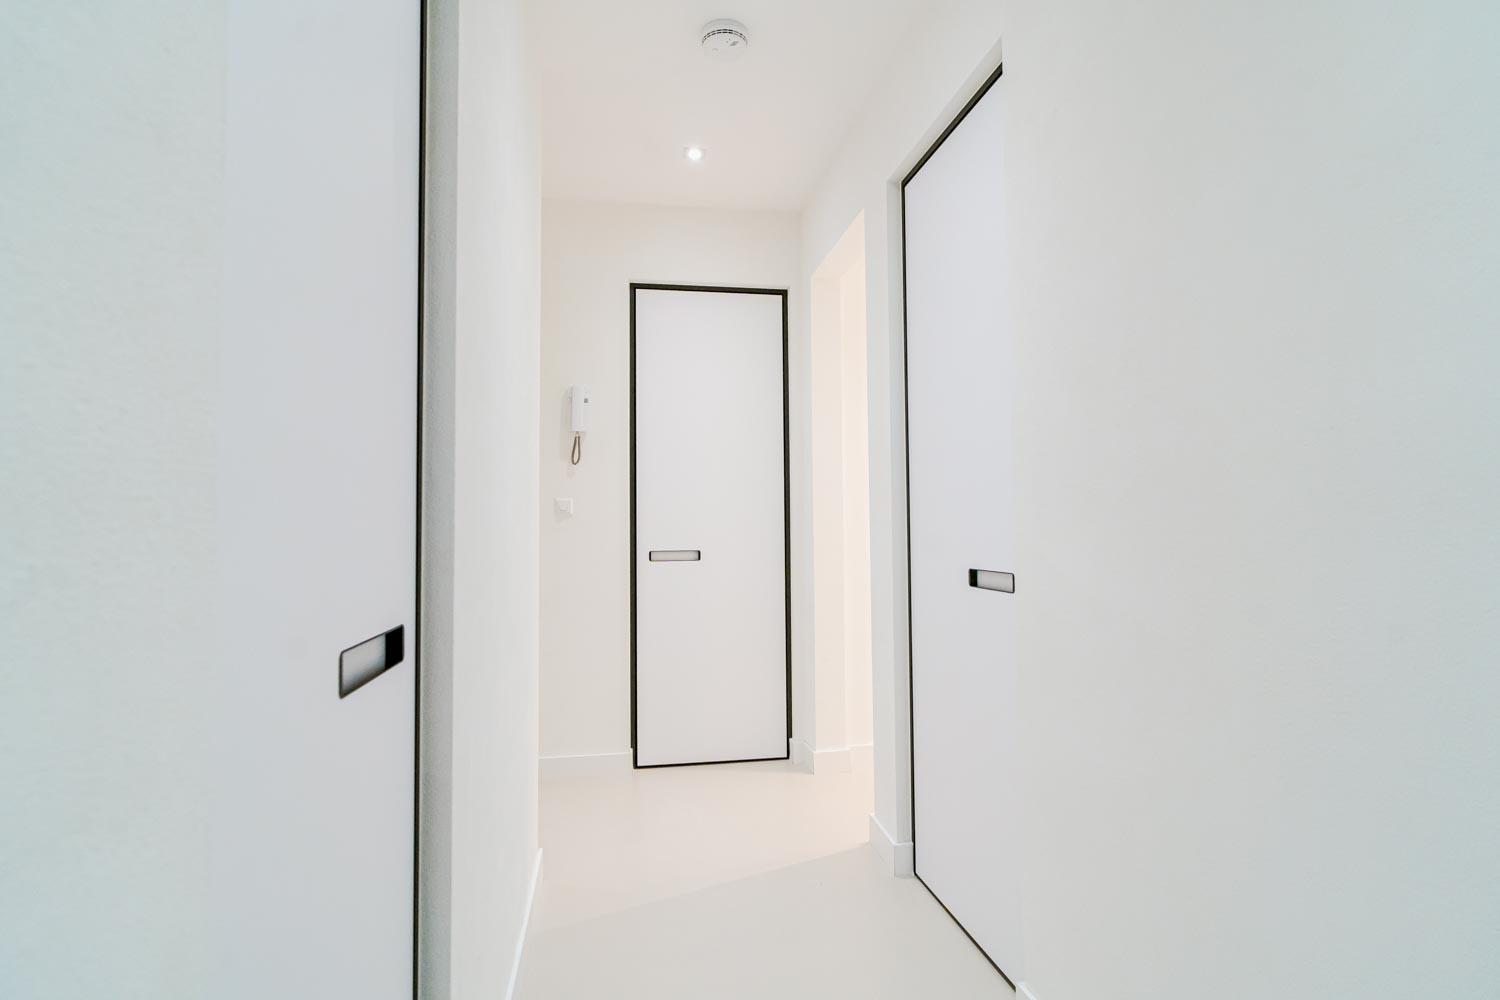 Strakke vlakke taatsdeuren in minimalistisch interieur